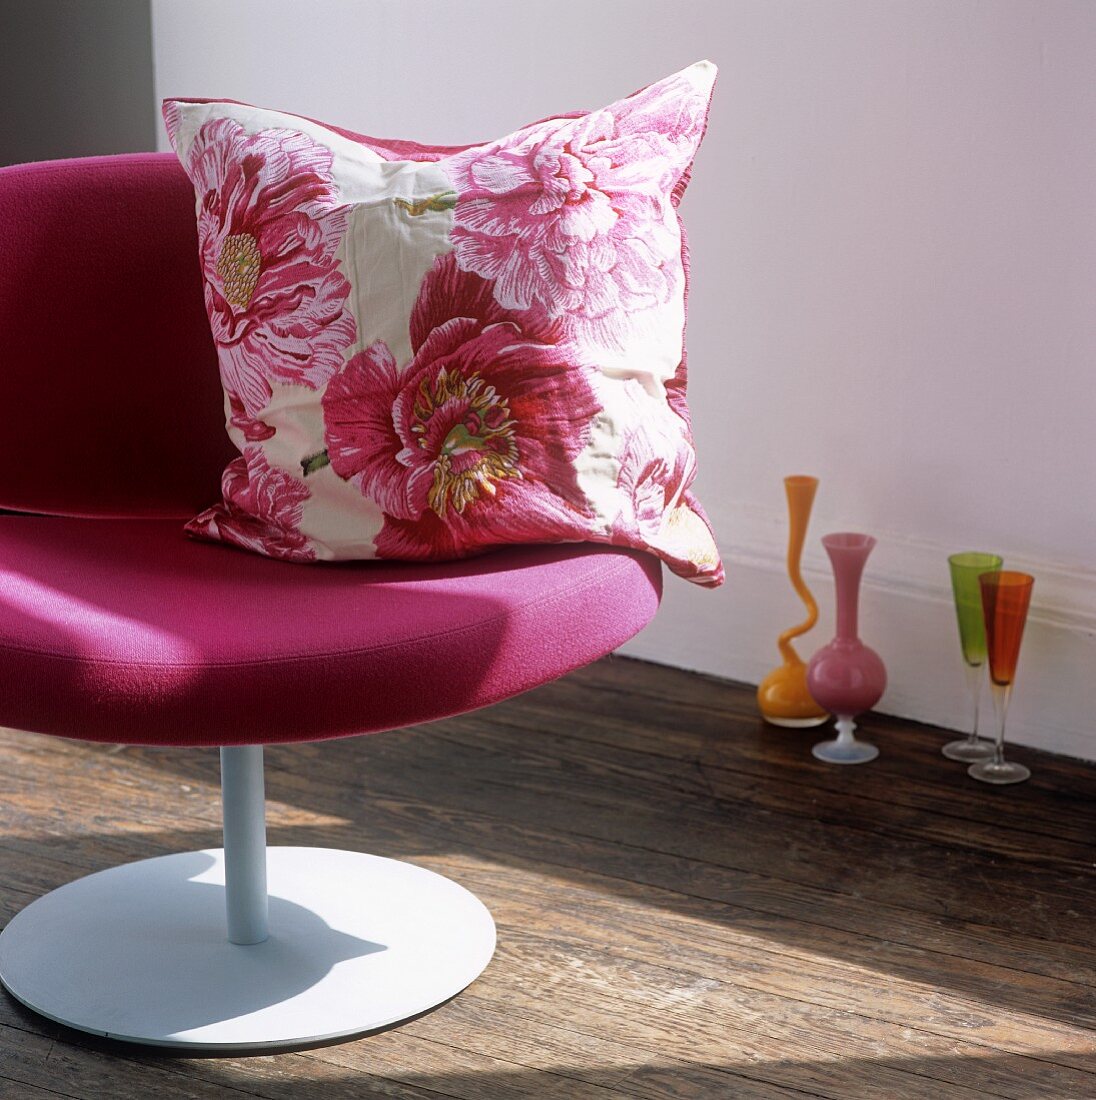 Kissen mit Blumenmuster auf pinkfarbenem Sessel und farbige Vasen und Stielgläser auf Boden